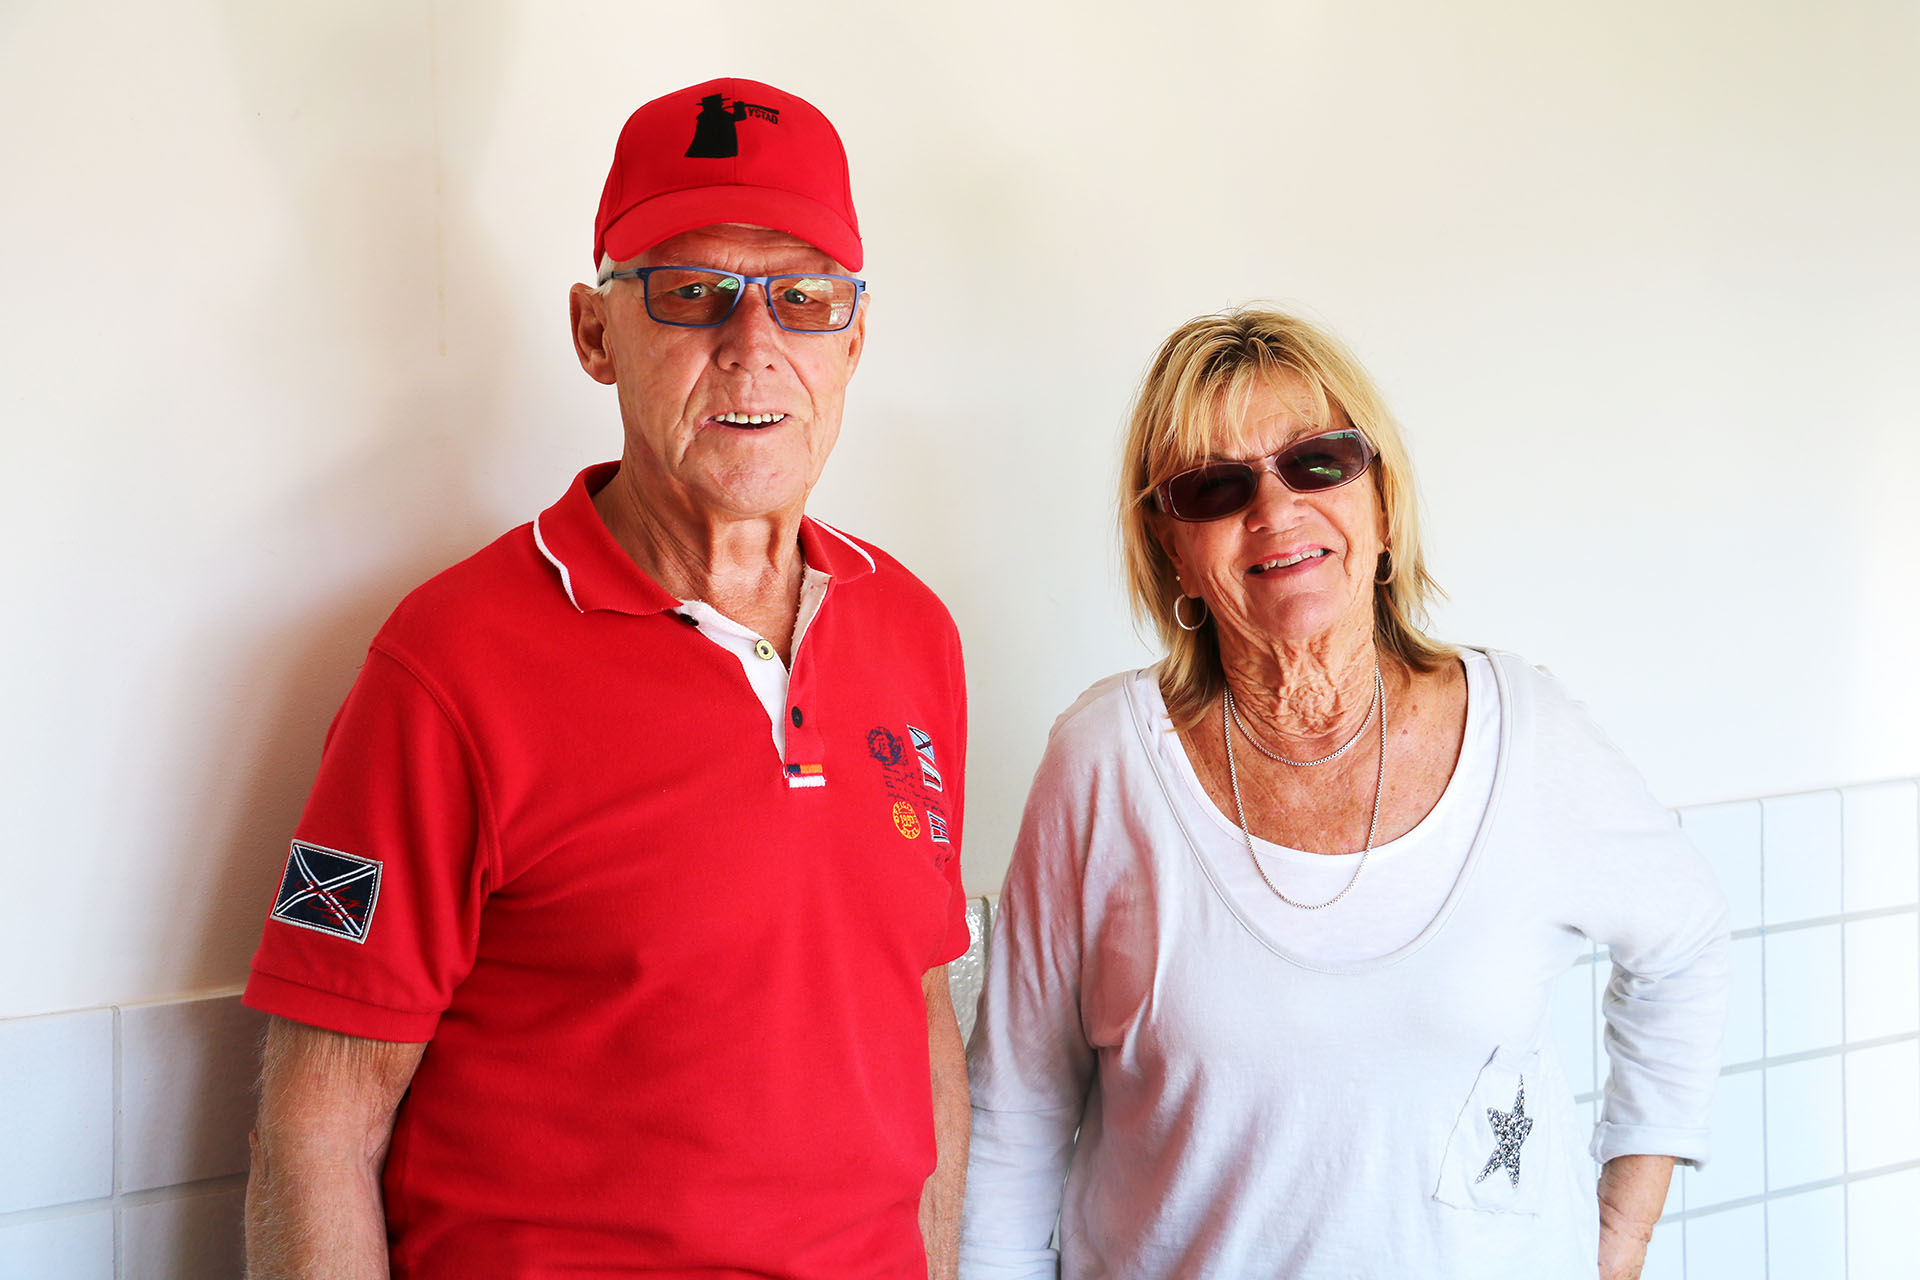 En äldre man med en röd tröja och en röd keps, står bredvid en kvinna med solglasögon och en vit tröja